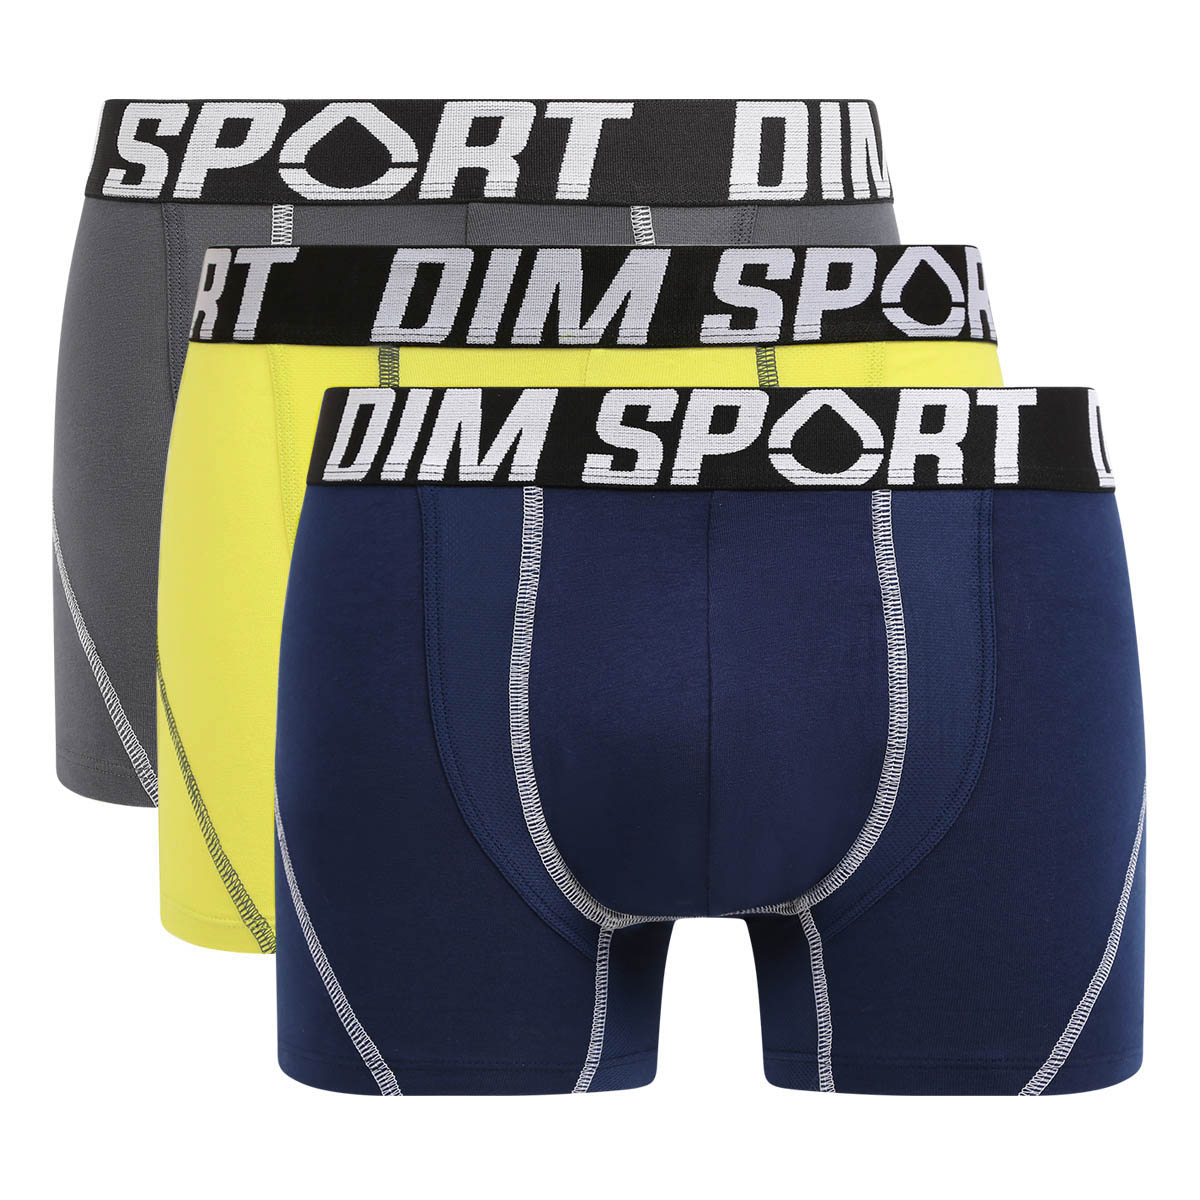 Baumwoll-Boxer - 3er-Pack grau/gelb/blau DIM Sport Mesh-Einsatz mit